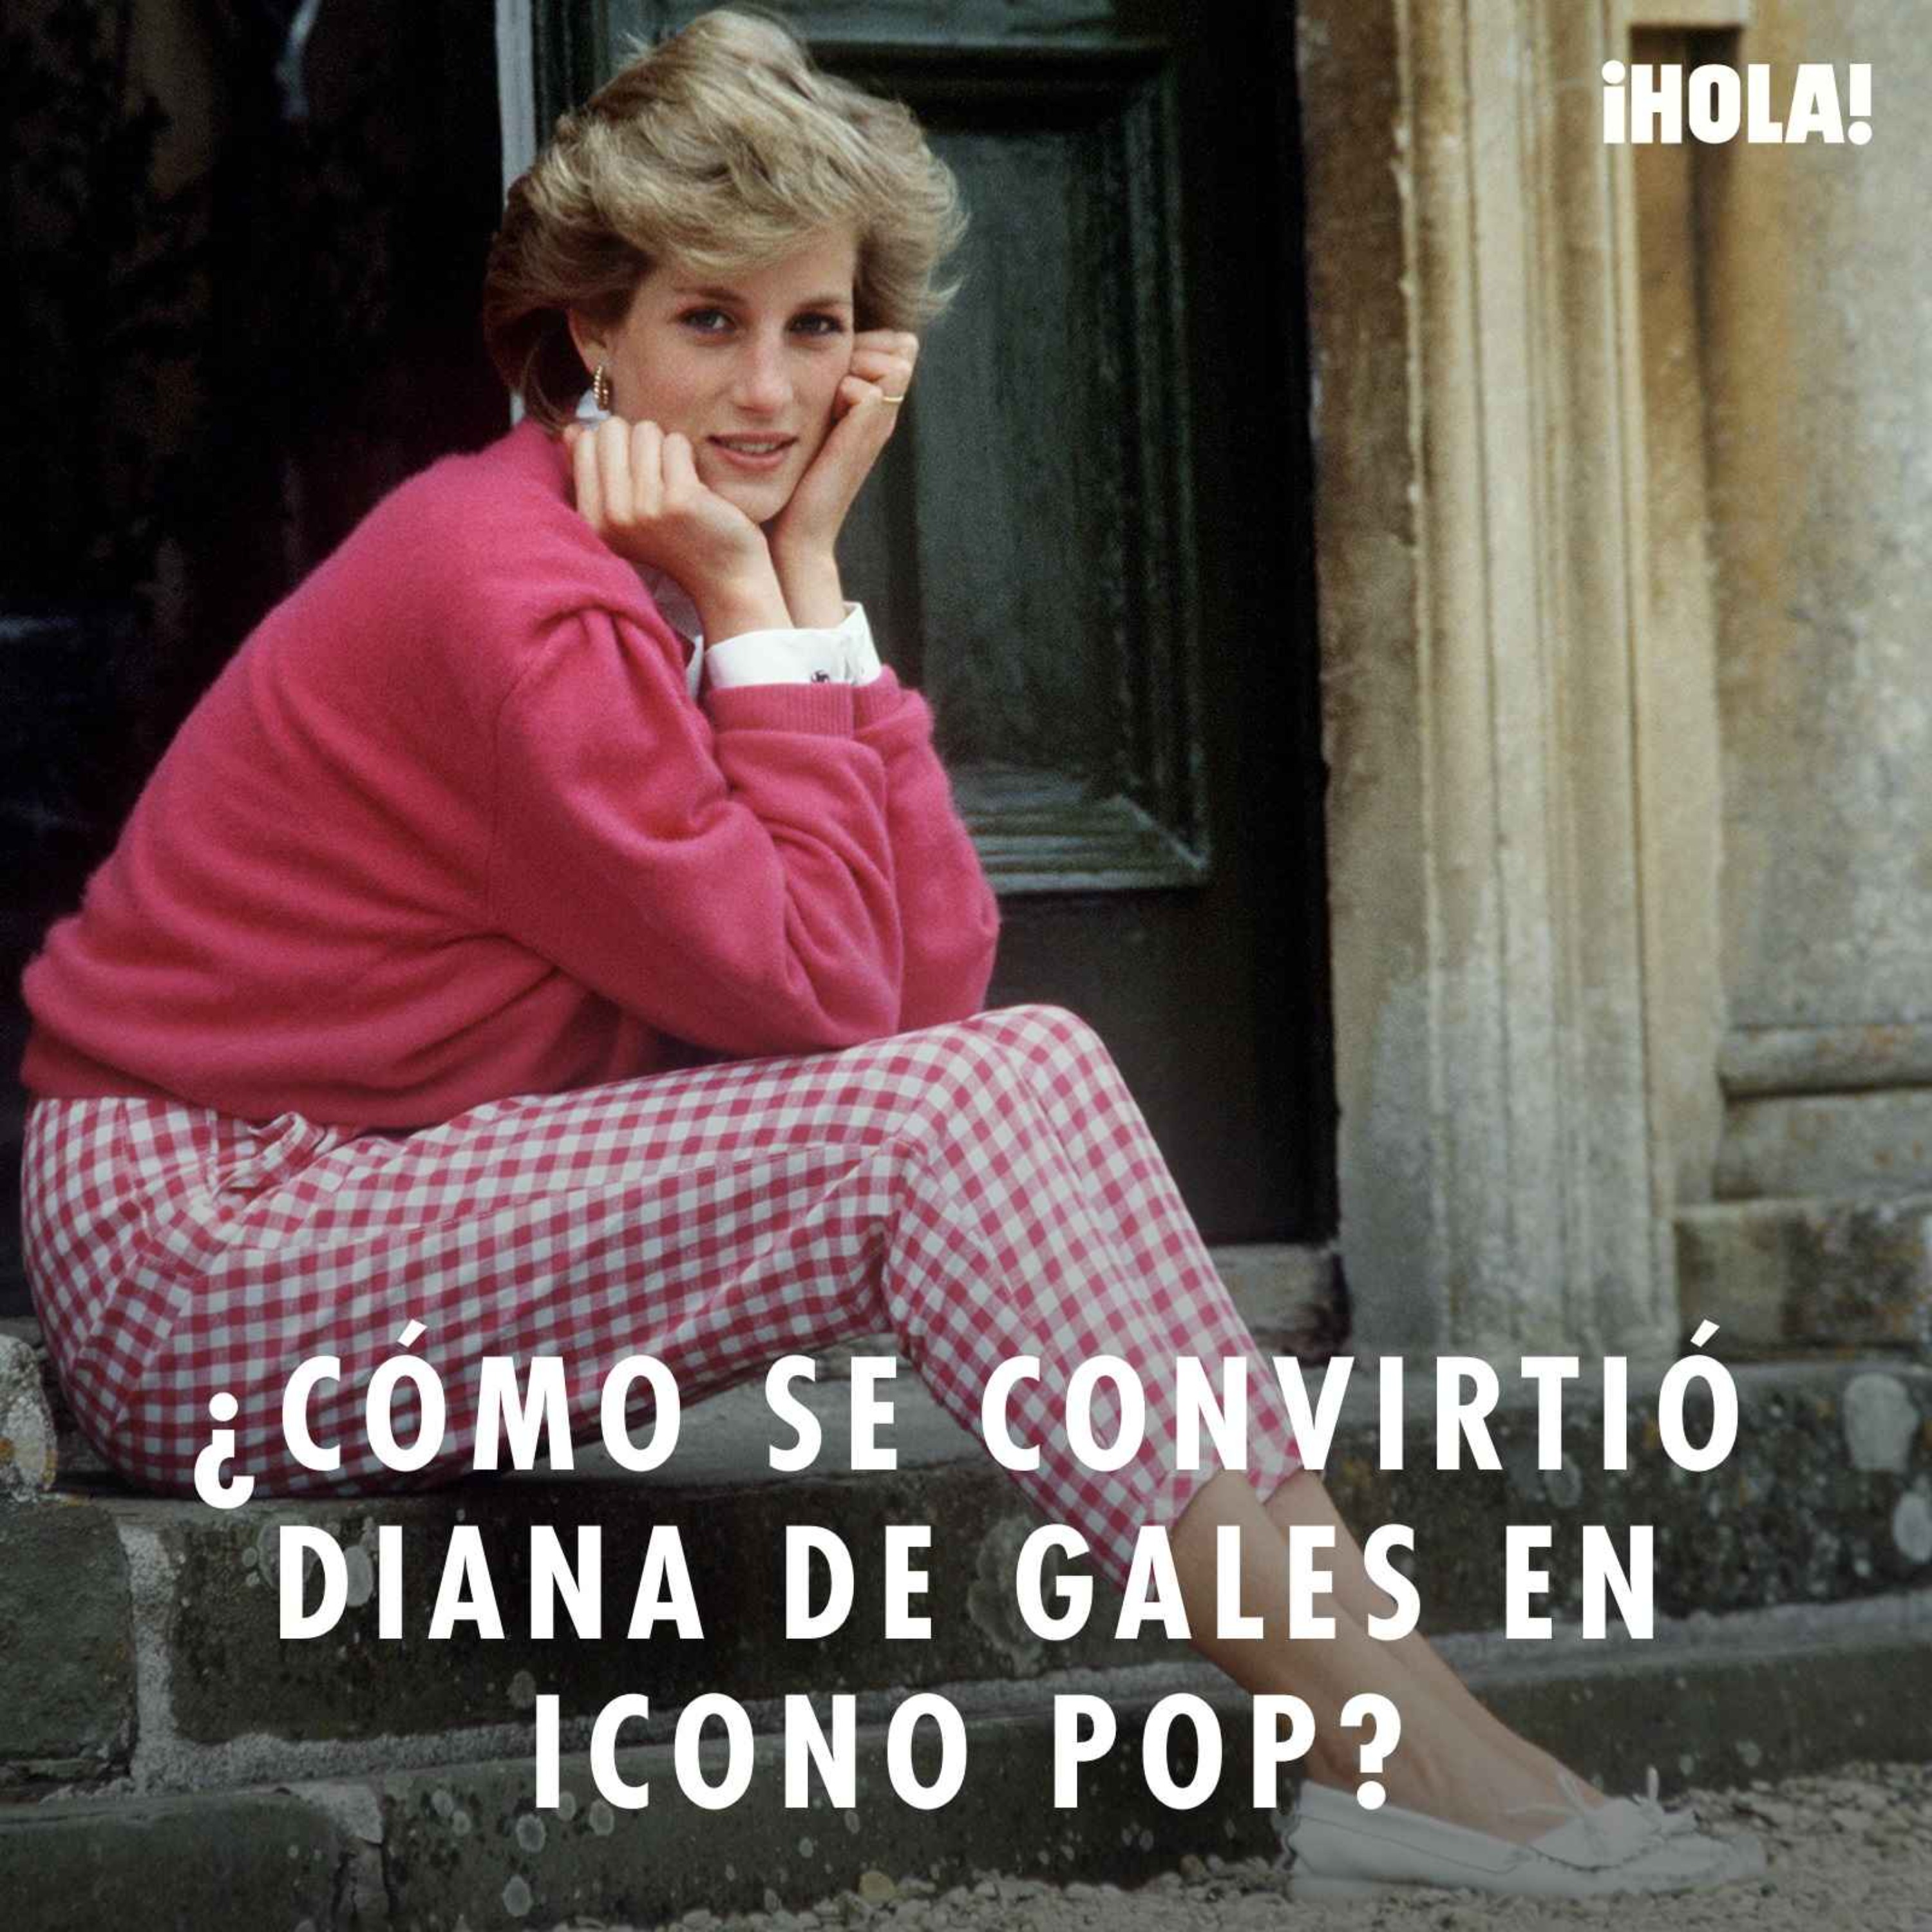 ¿Cómo se convirtió Diana de Gales en icono pop?